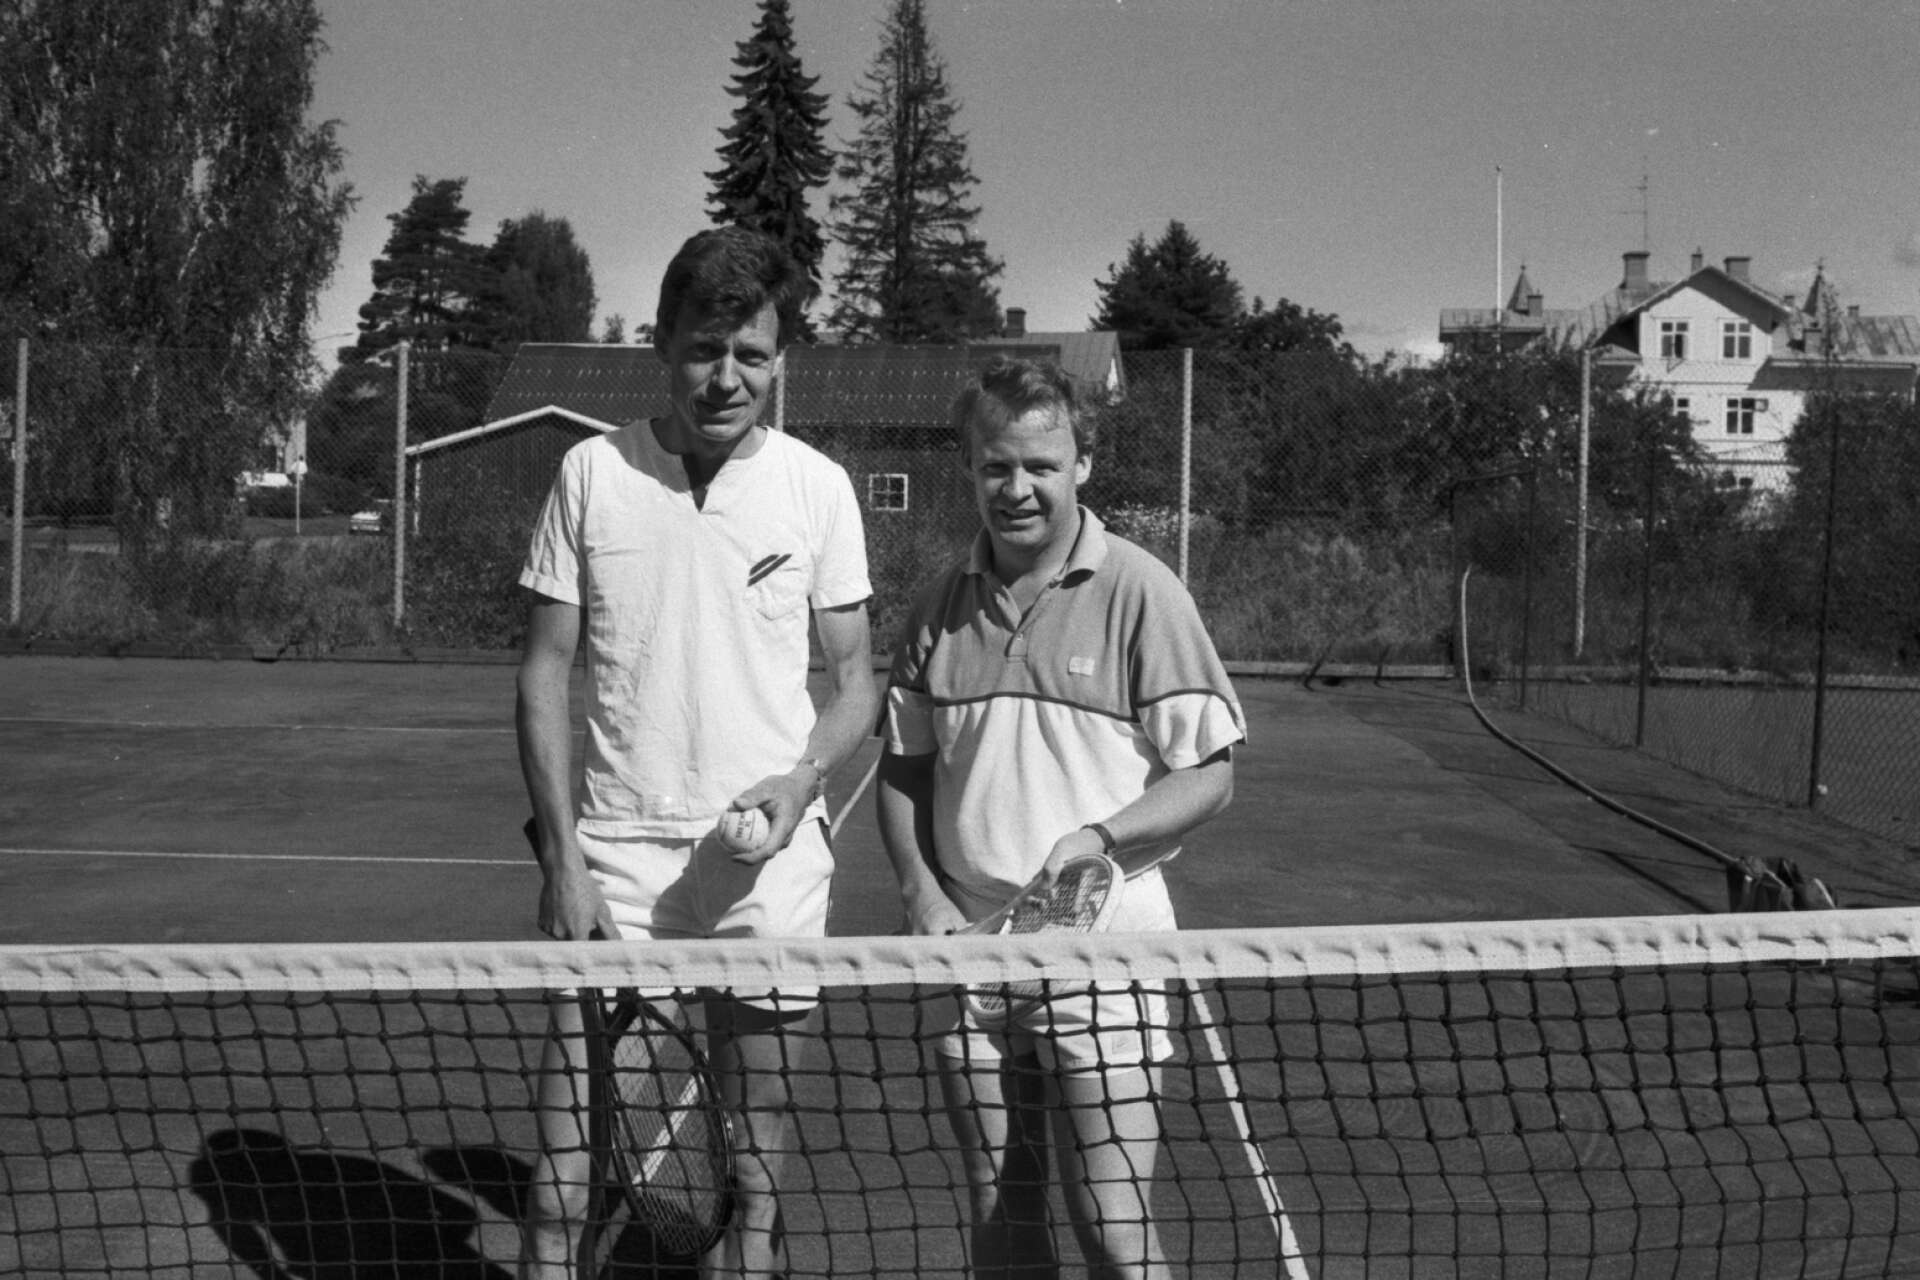 Veteranfinal i tennis. Thomas Sahlberg och Gerth Nilsson.